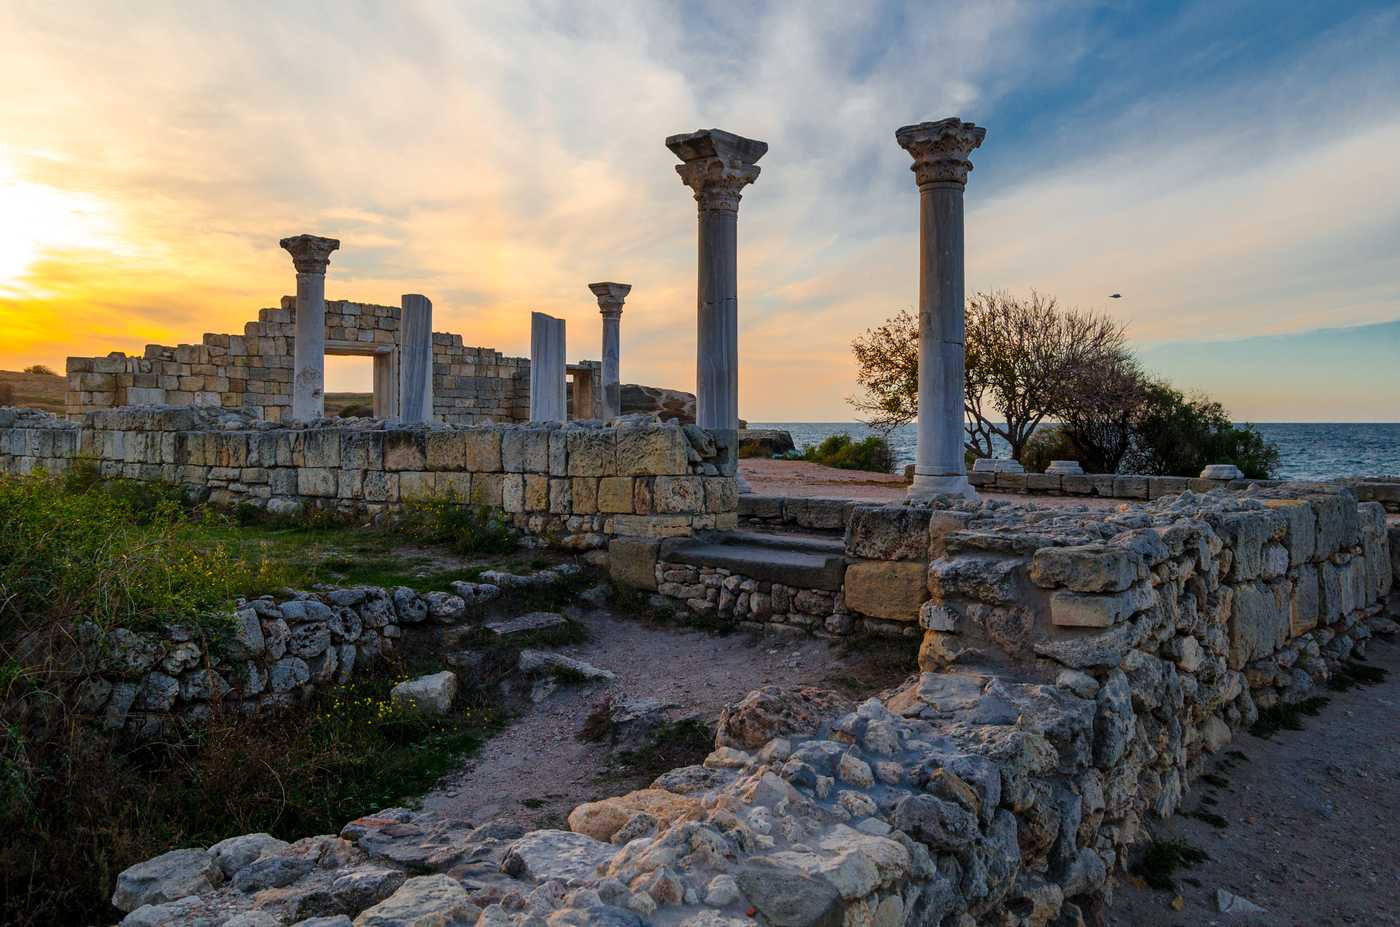 Херсонес Таврический - самый известный эллинский город Крыма Херсонес был основан 2500 лет назад и просуществовал почти 19 веков